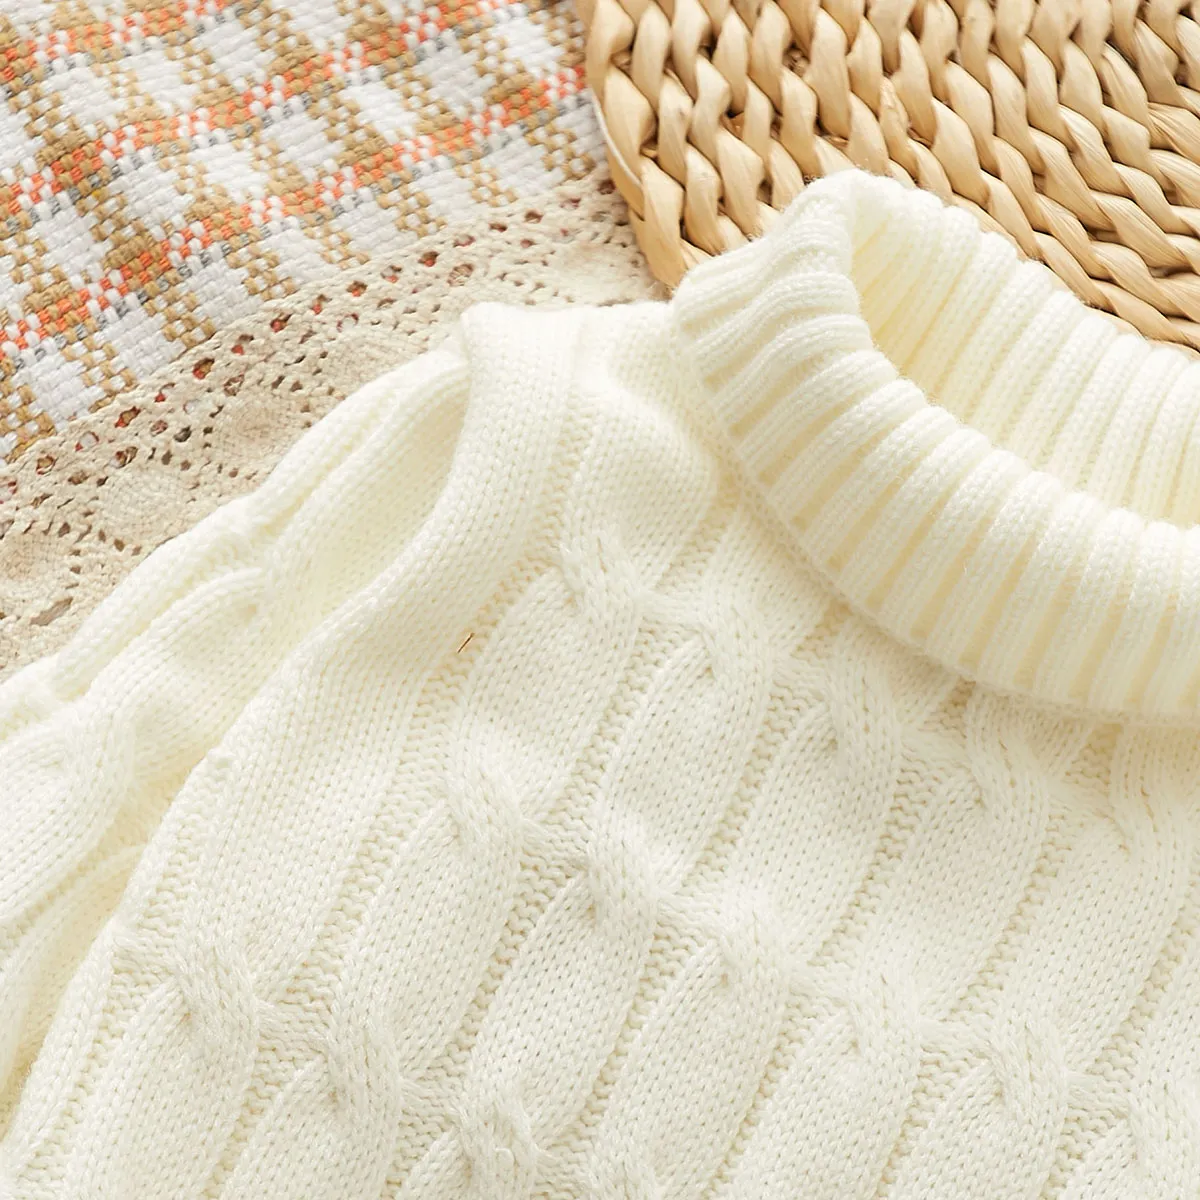 Toddler Boy/Girl Basic Textured Turtleneck Sweater   White big image 1